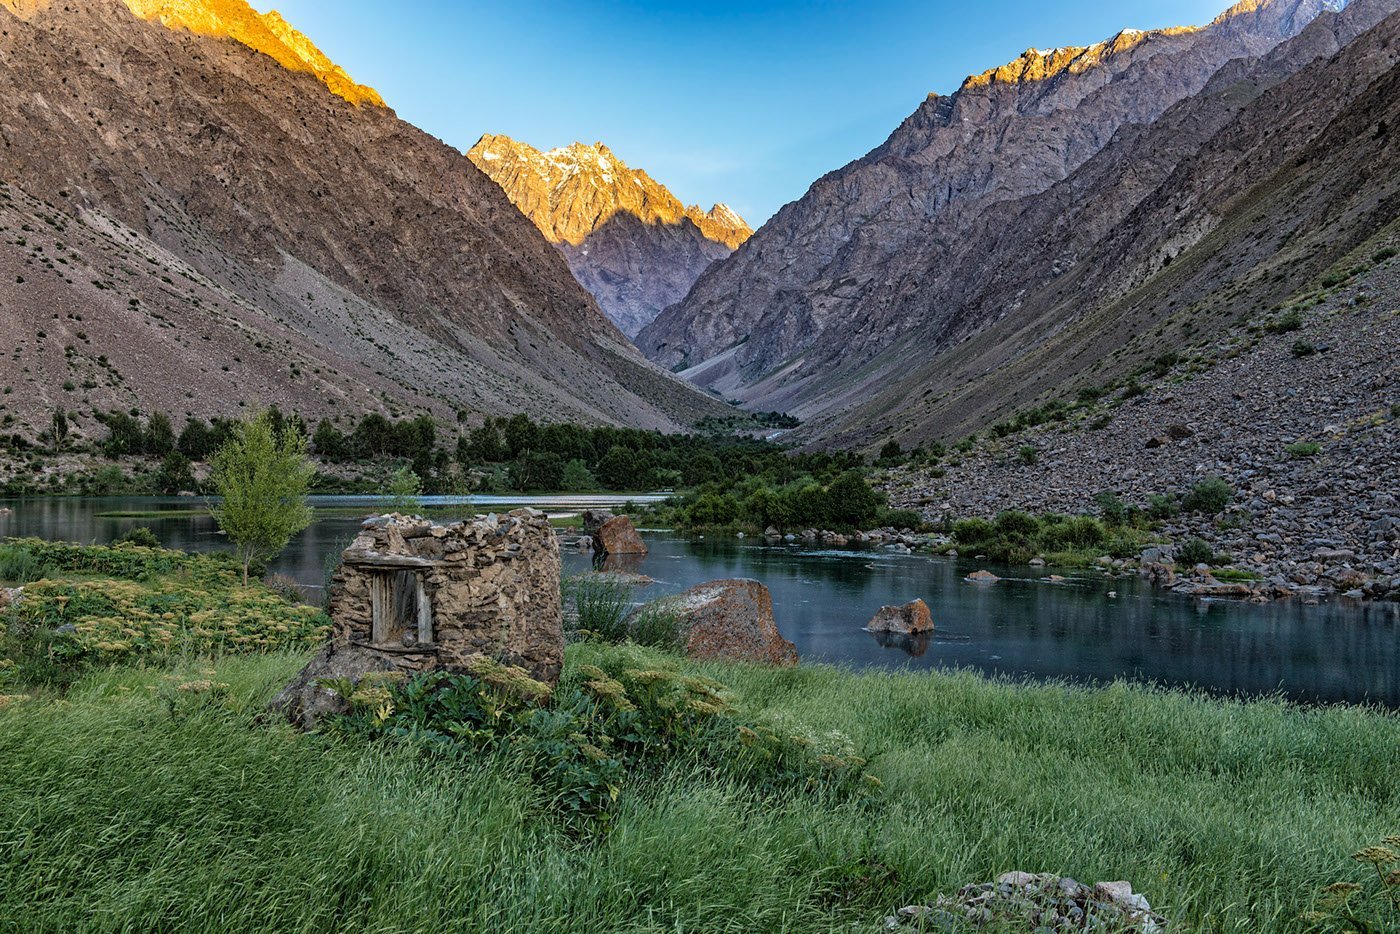 Насчет таджикистана. Фанские горы Памир. Горный Таджикистан Памир. Памир река Бартанг. Национальный парк Памир Таджикистан.